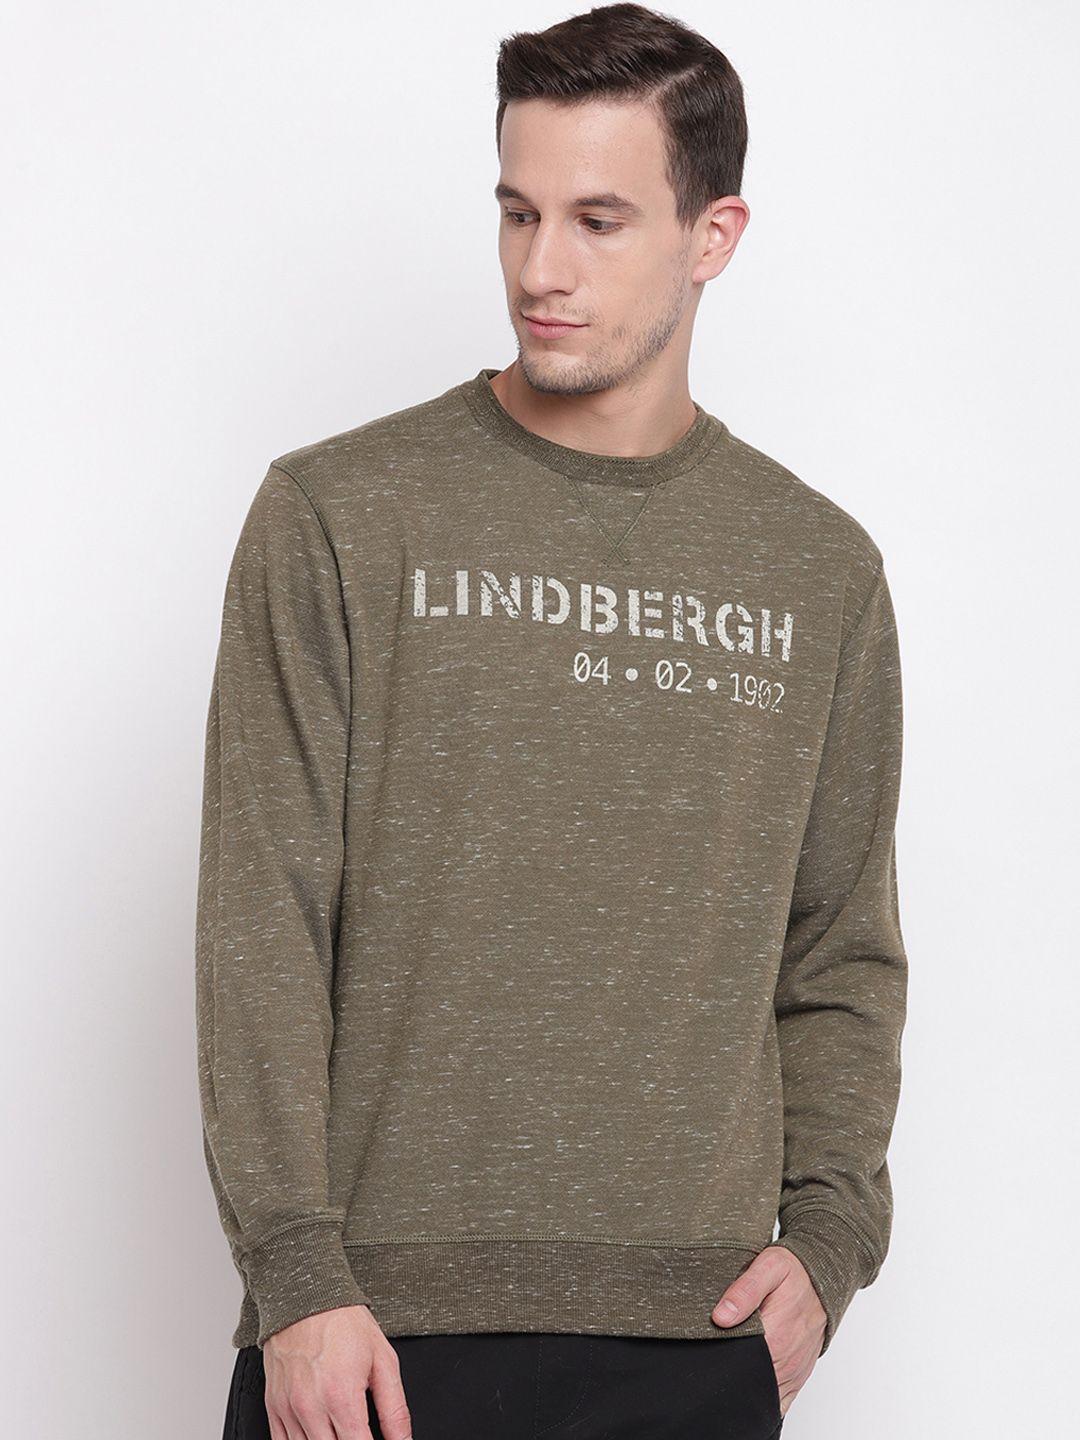 lindbergh-men-brown-printed-pullover-sweater